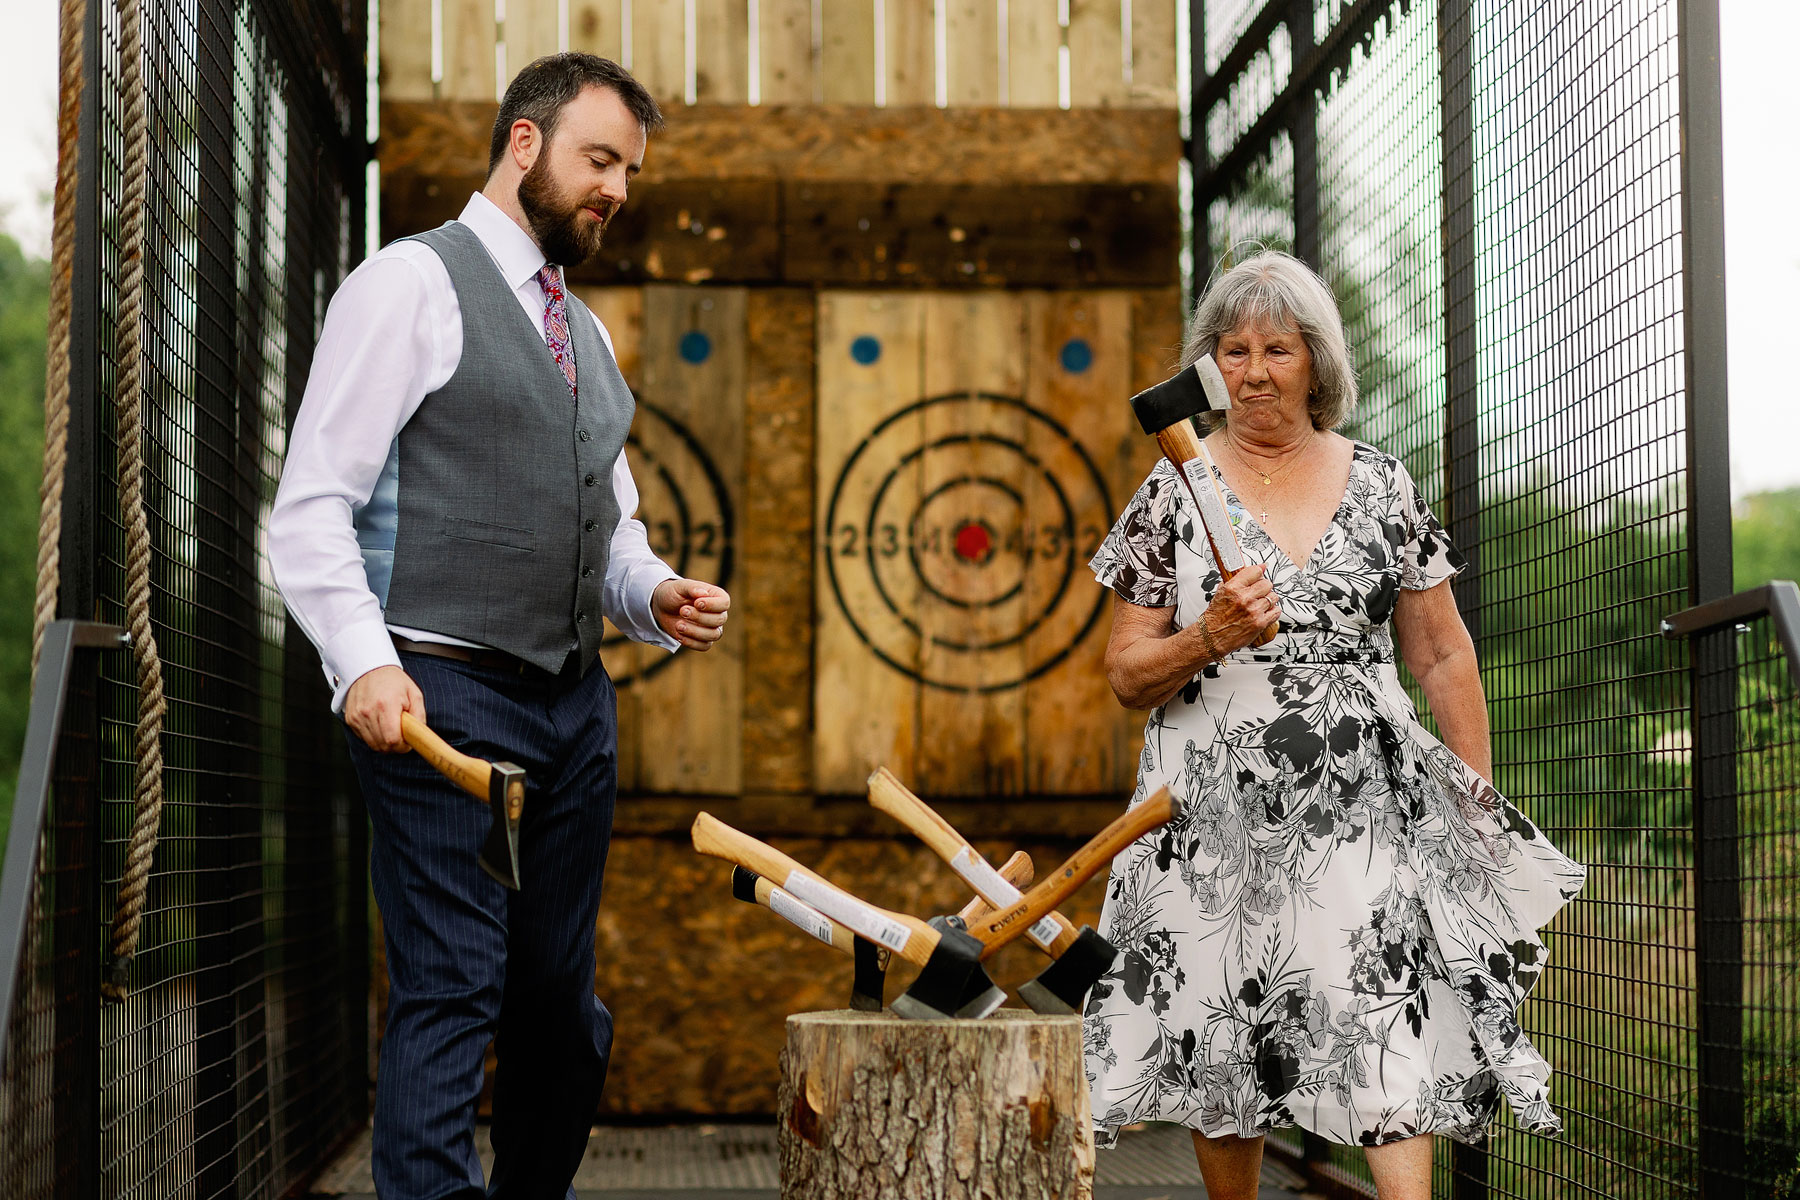 axe throwing at a wedding